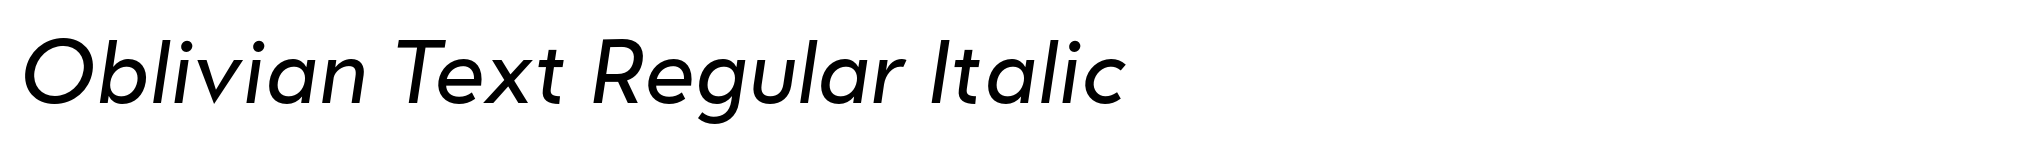 Oblivian Text Regular Italic image